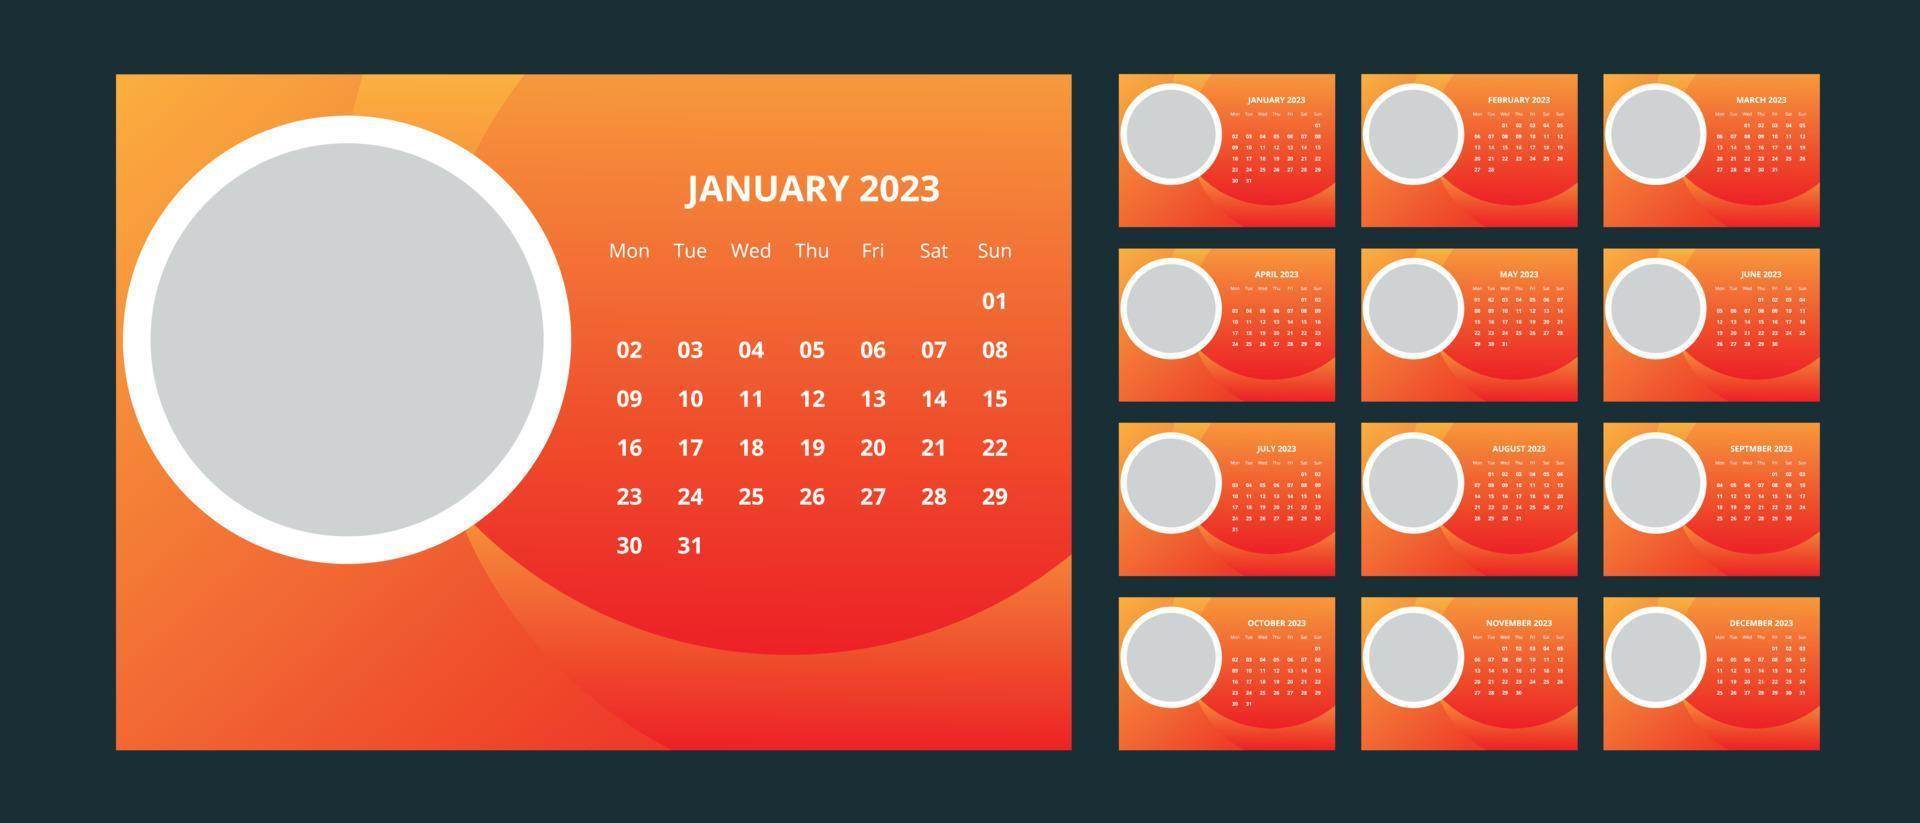 calendario de escritorio 2023 vector